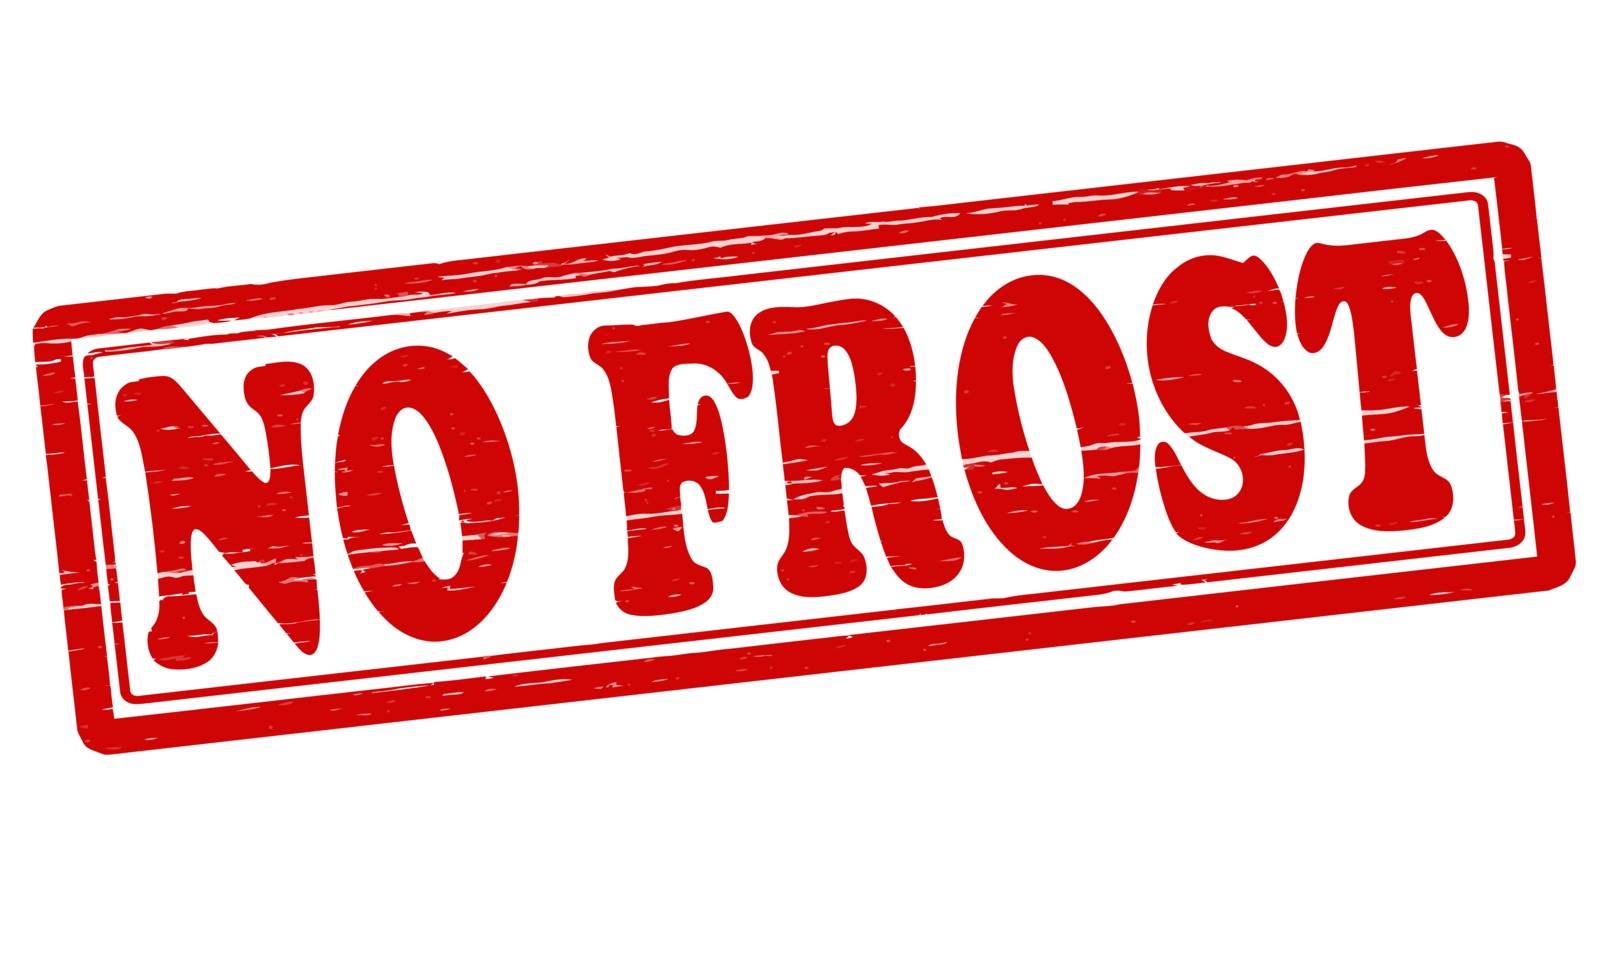 No frost by carmenbobo